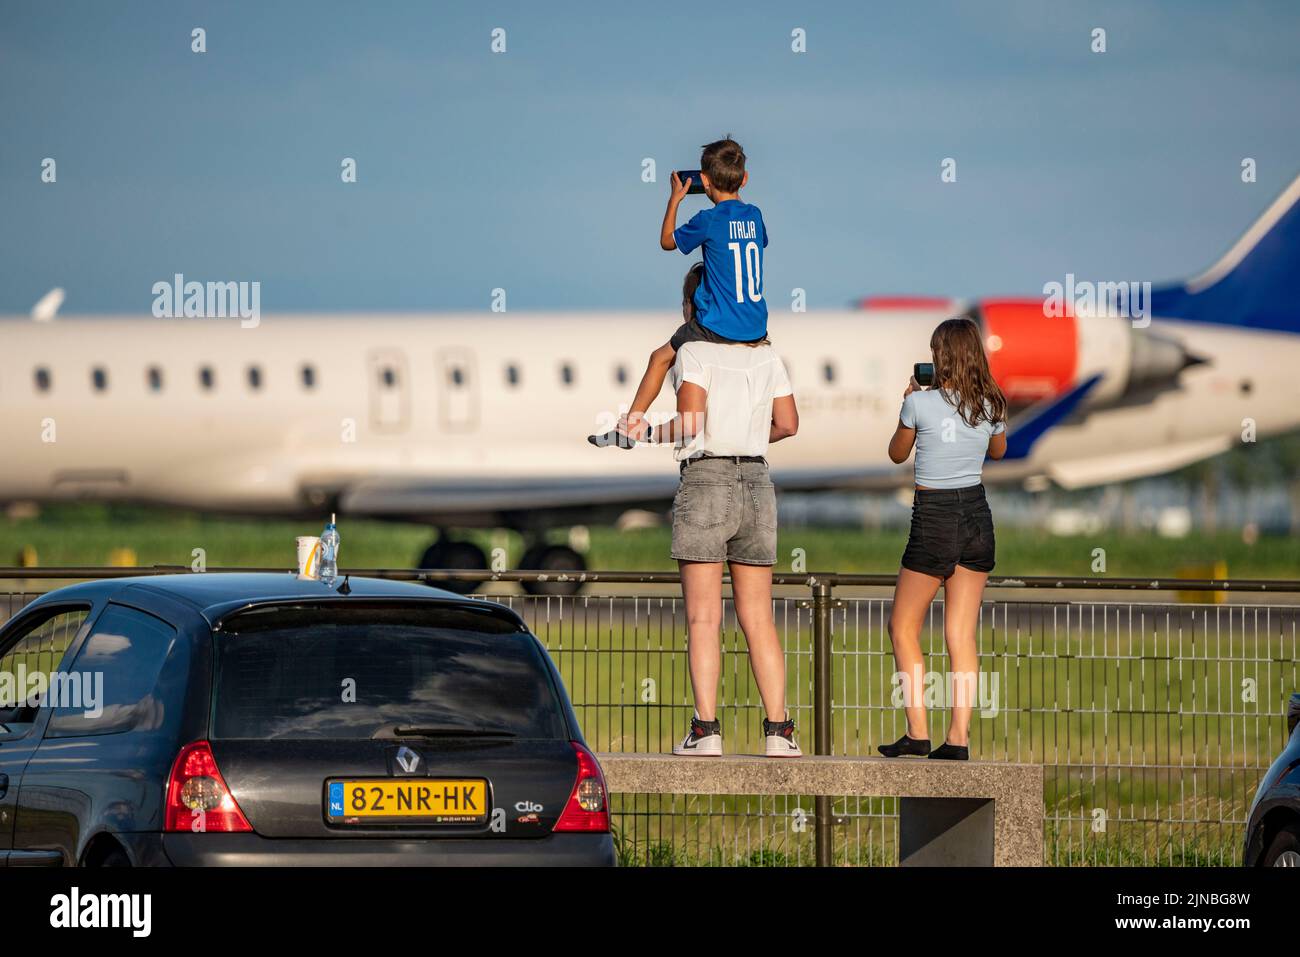 Amsterdam Shiphol Airport, Polderbaan, eine von 6 Start- und Landebahnen, Spotter Spot, Flugzeuge aus nächster Nähe sehen, Stockfoto